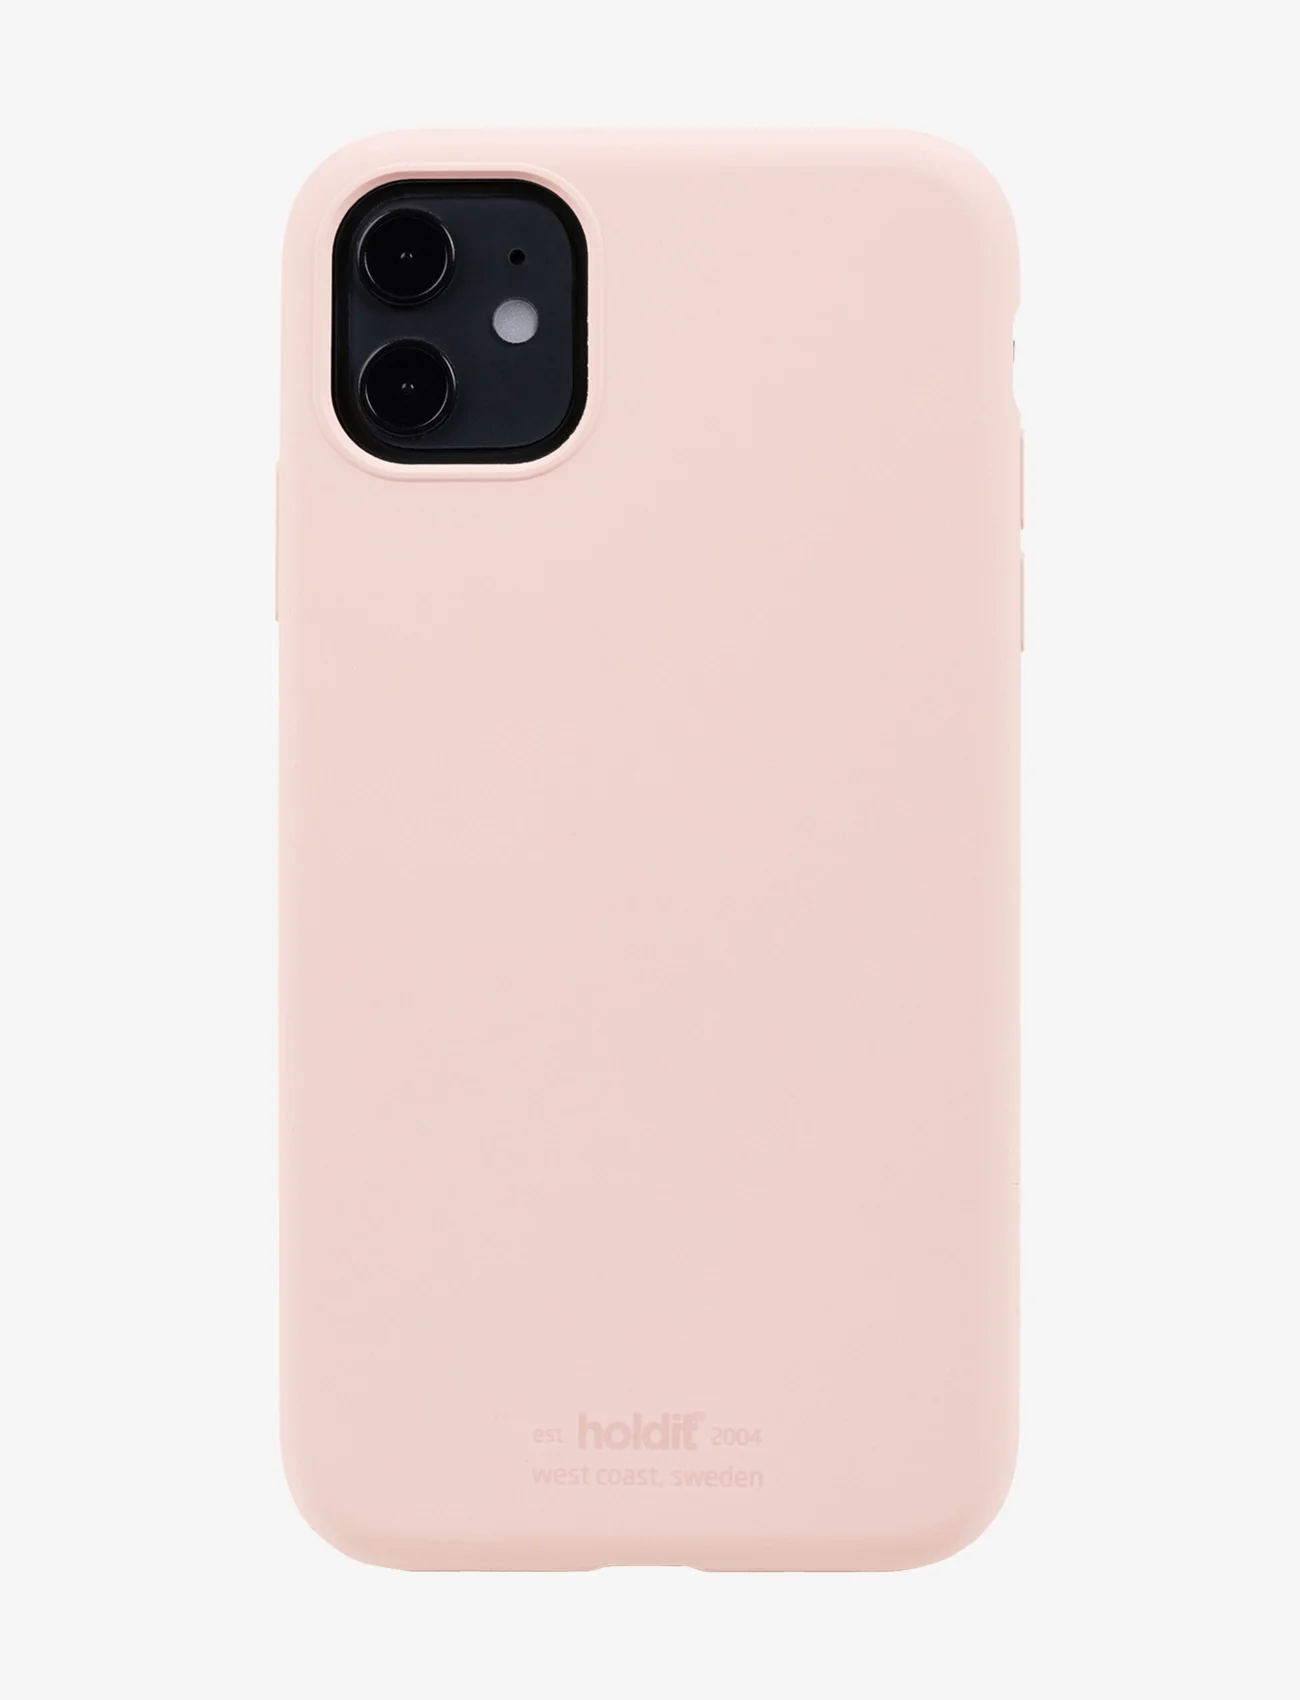 Holdit - Silicone Case iPhone 11 - najniższe ceny - blush pink - 0